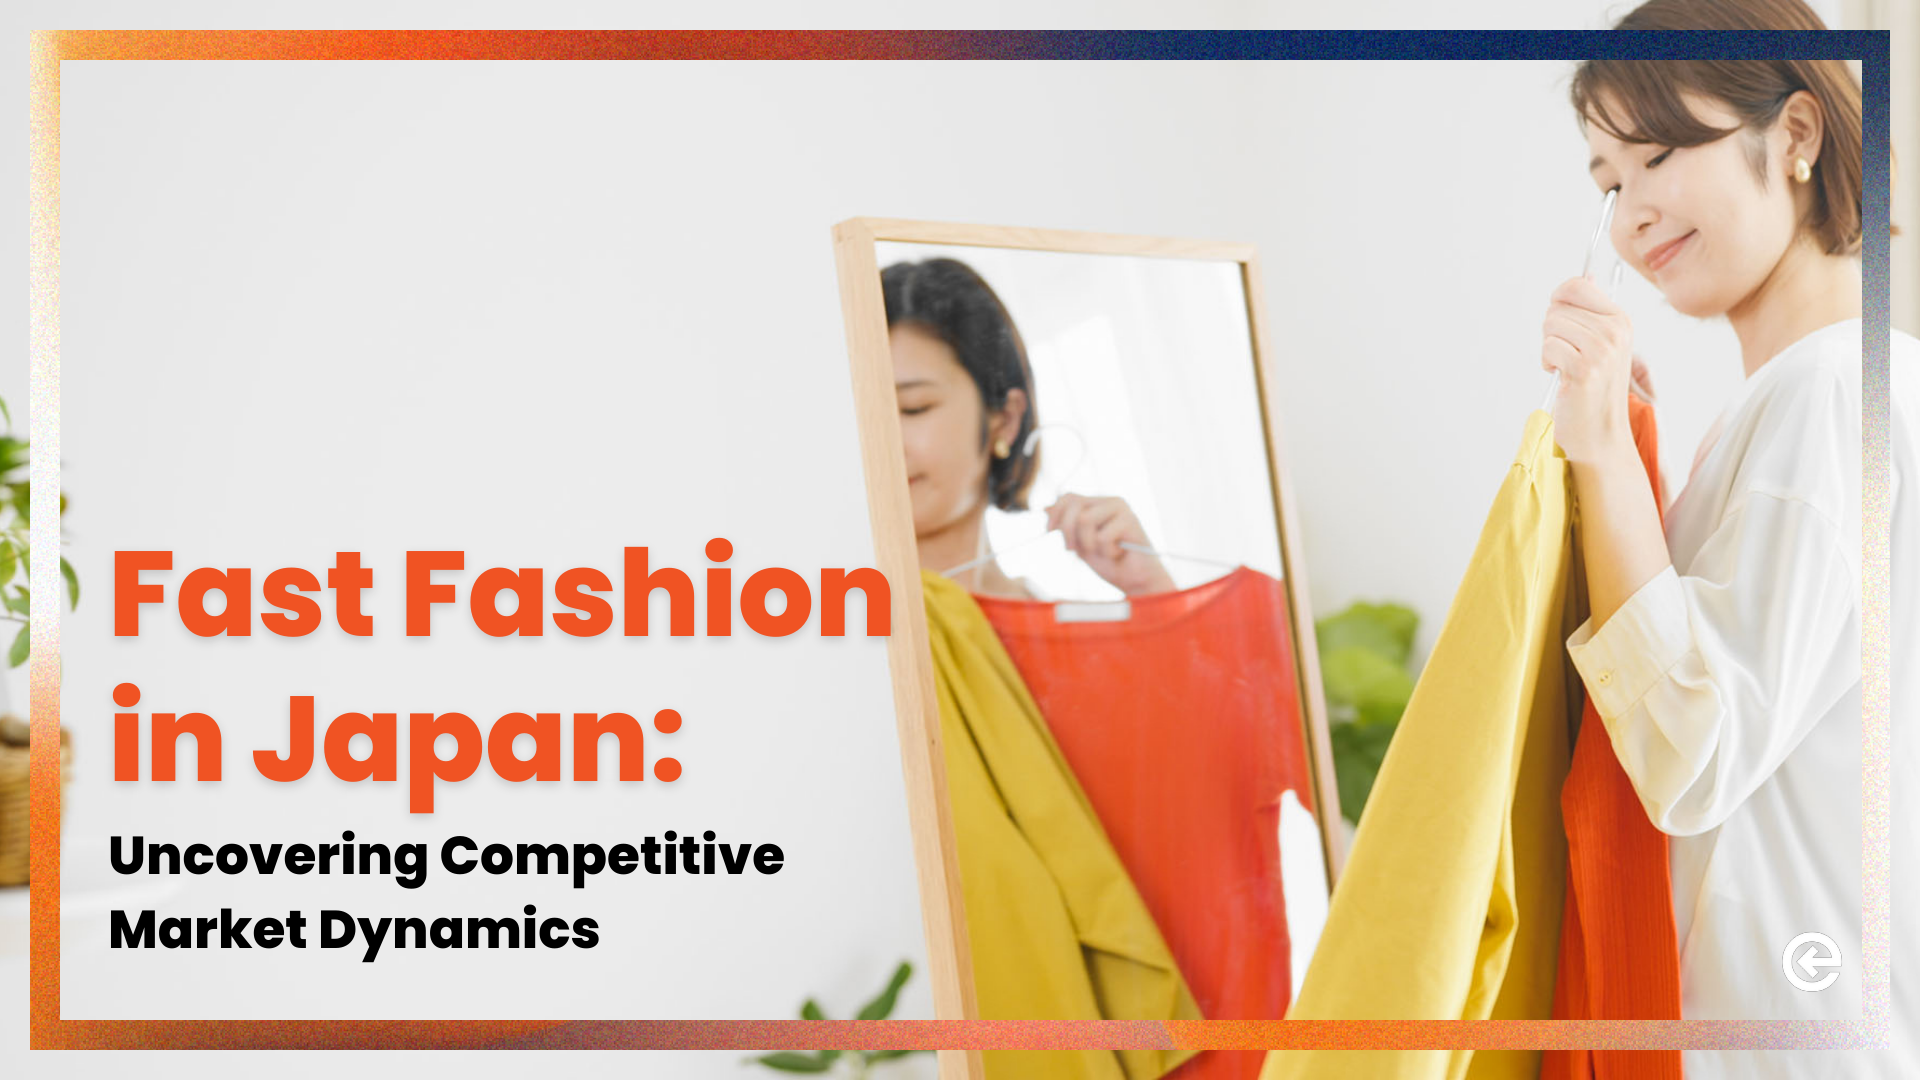 일본의 패스트 패션: 경쟁적인 시장 역학 관계 파악